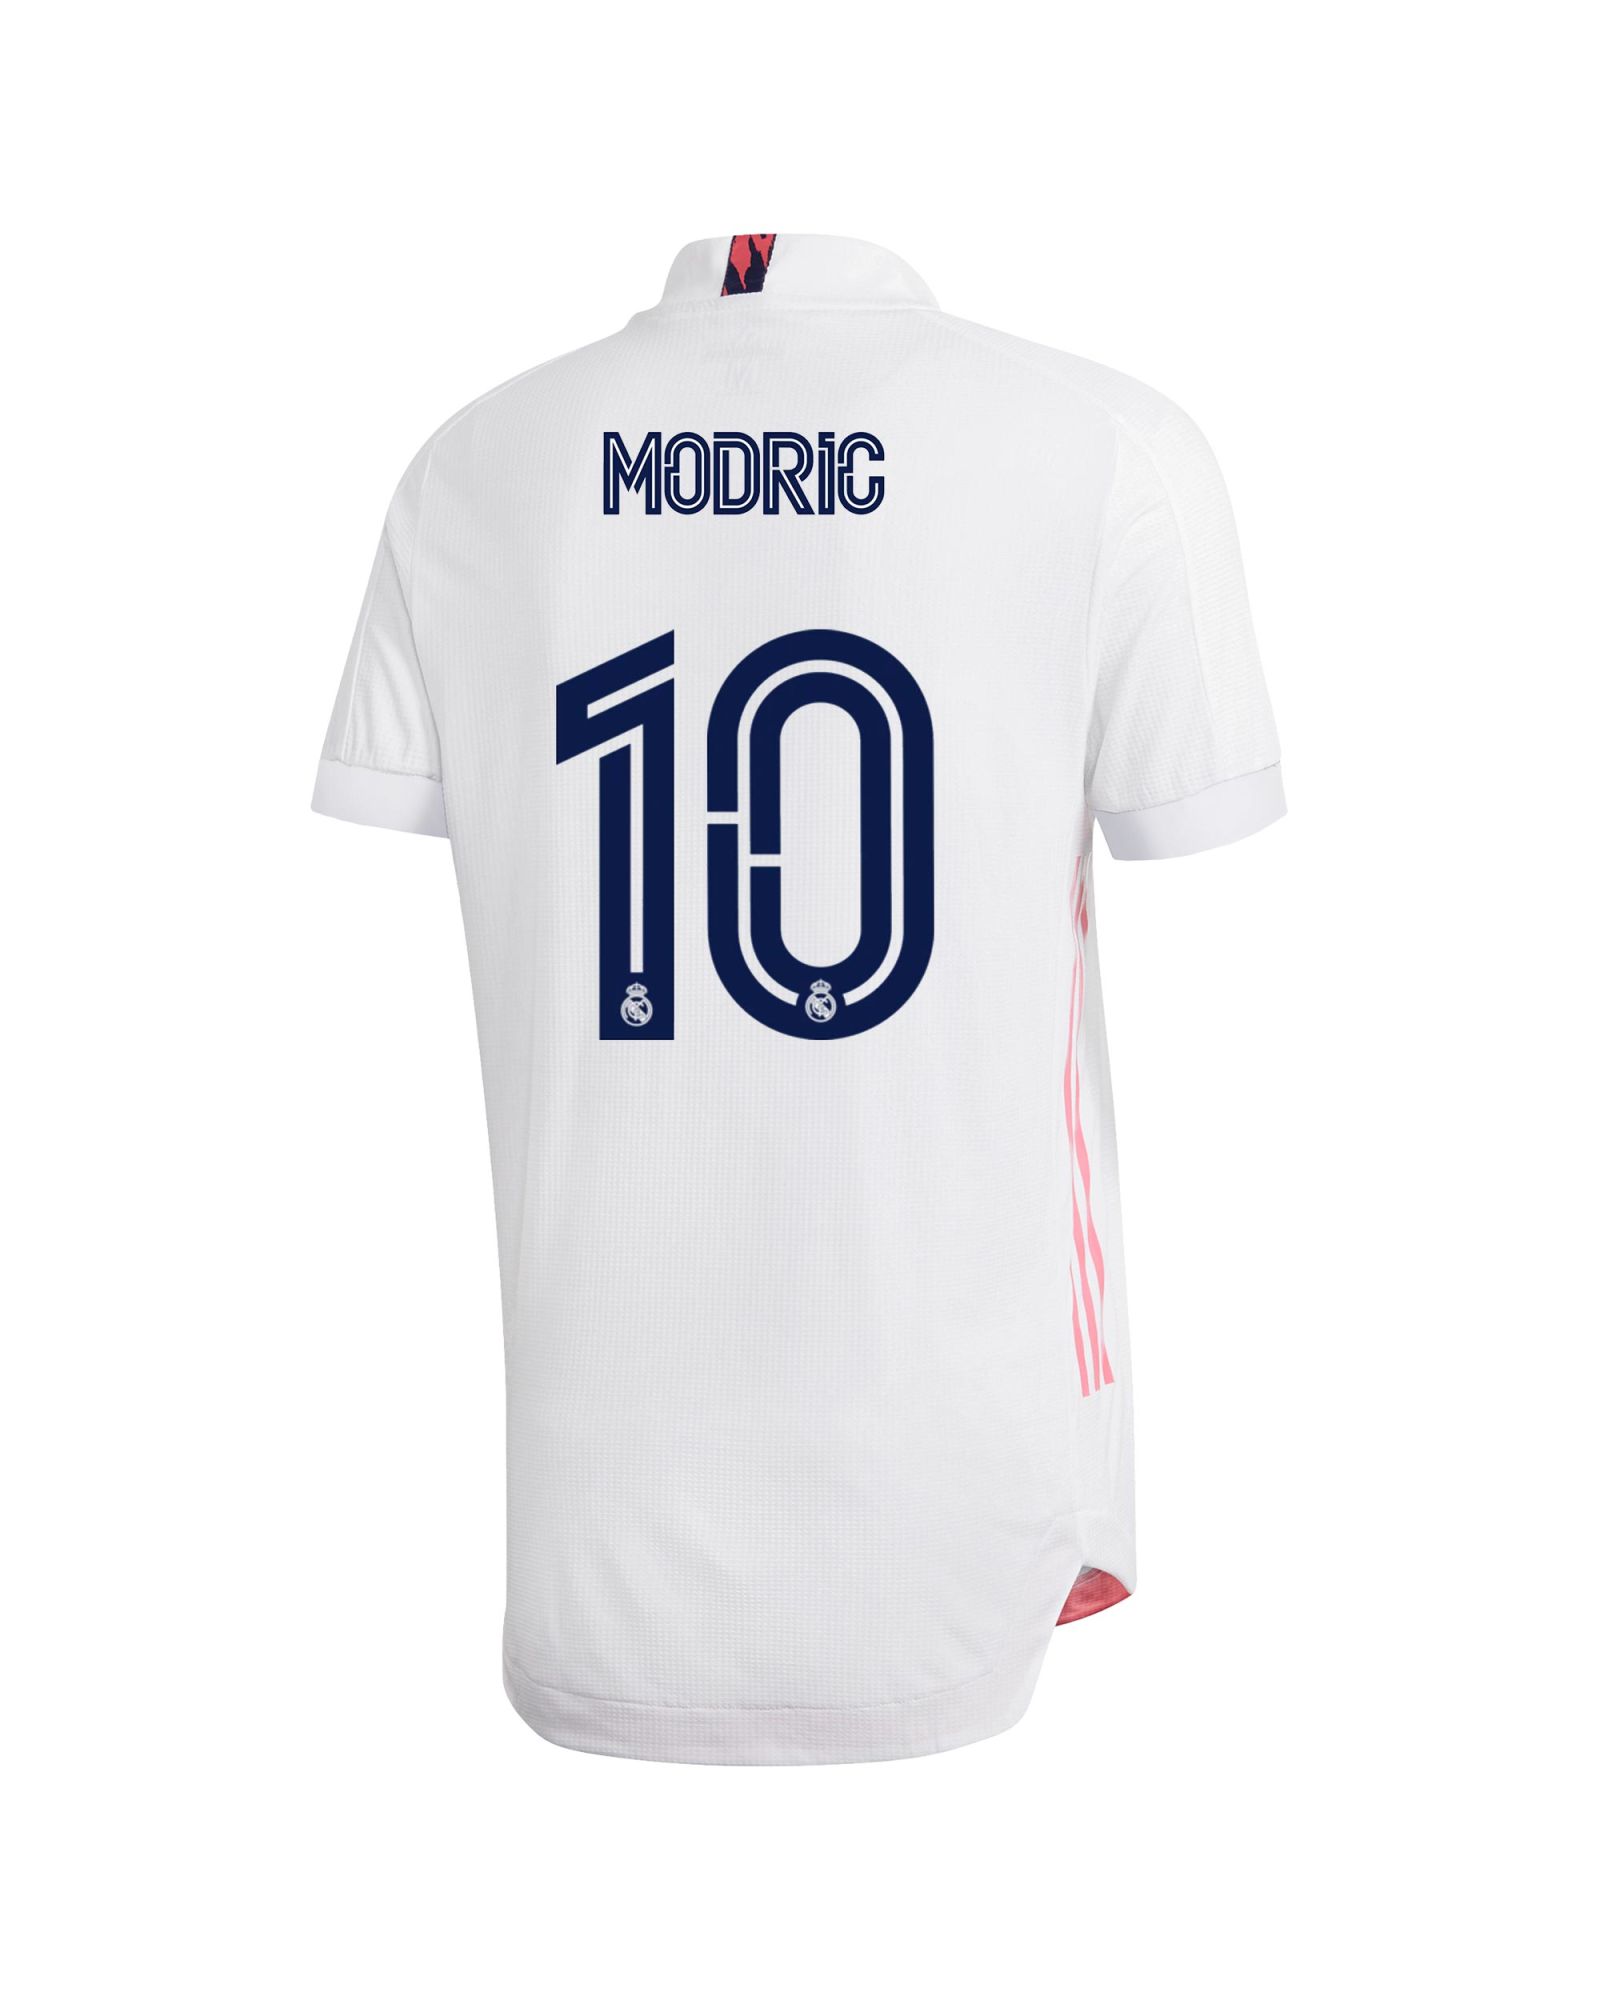 Camiseta 1ª Real Madrid 2020/2021 Authentic Modric - Fútbol Factory